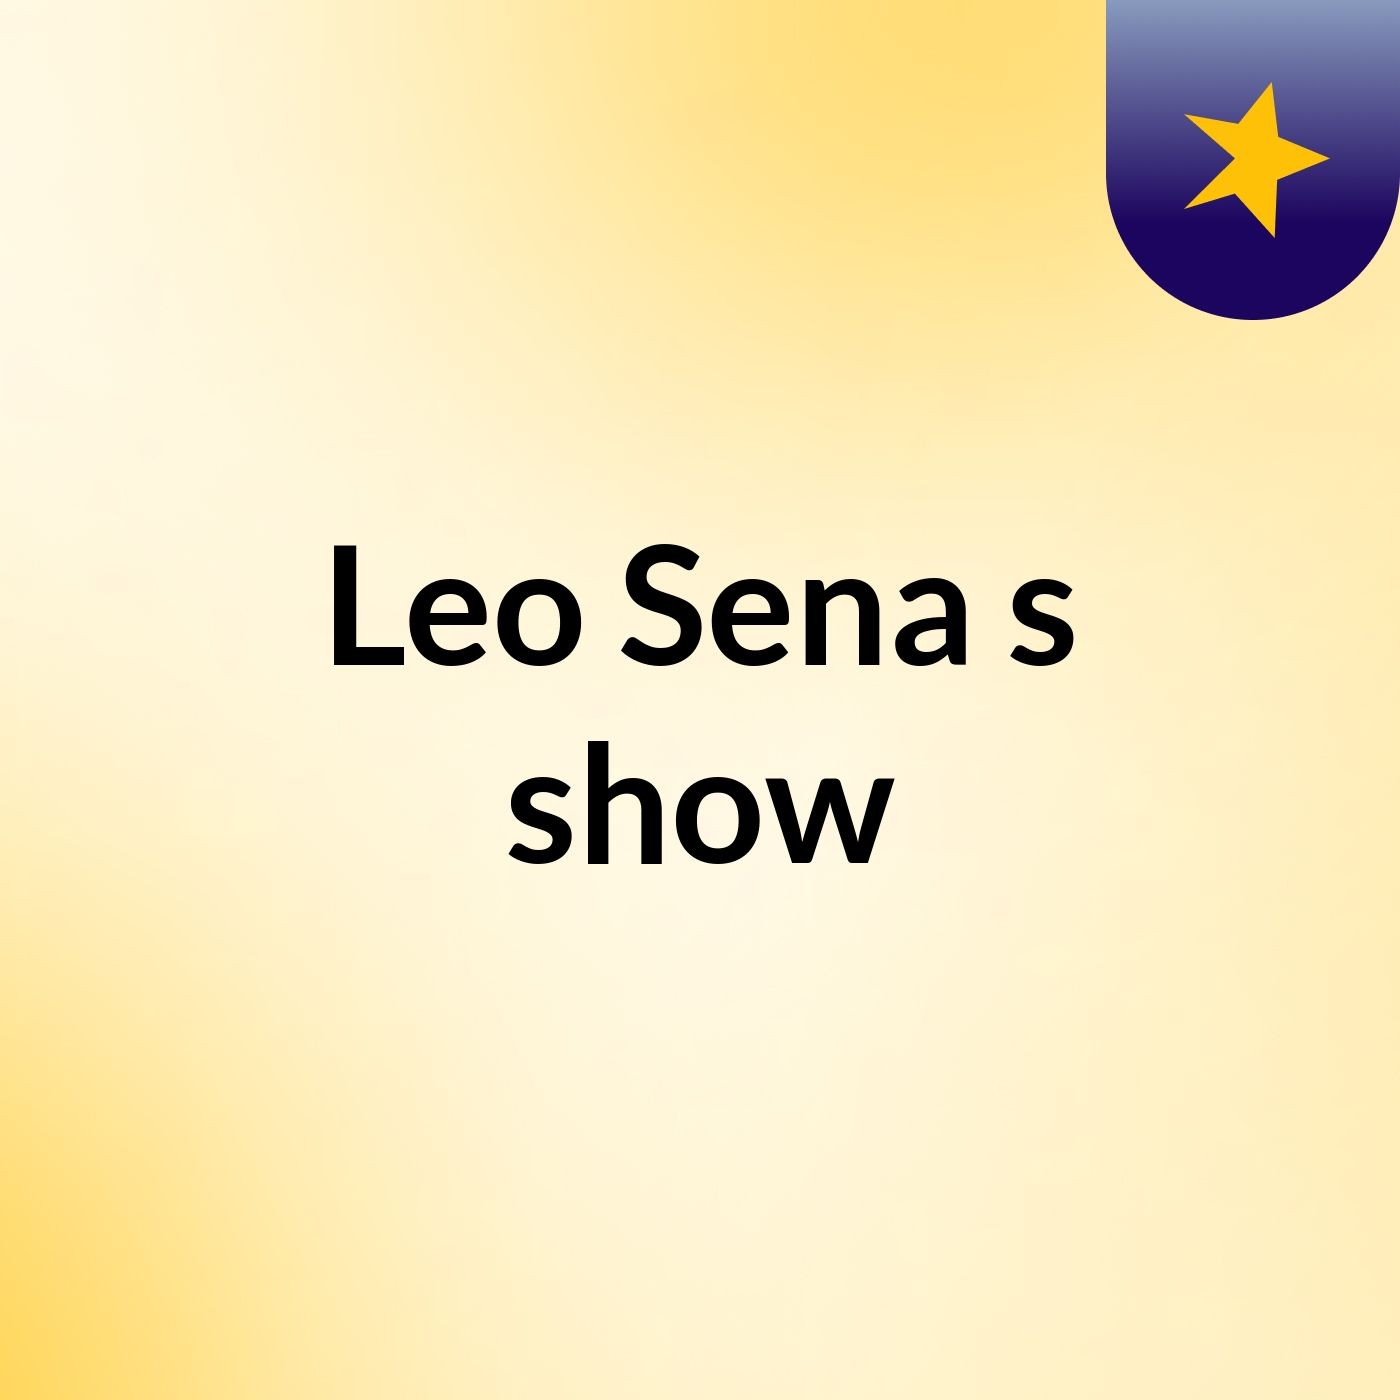 Leo Sena's show